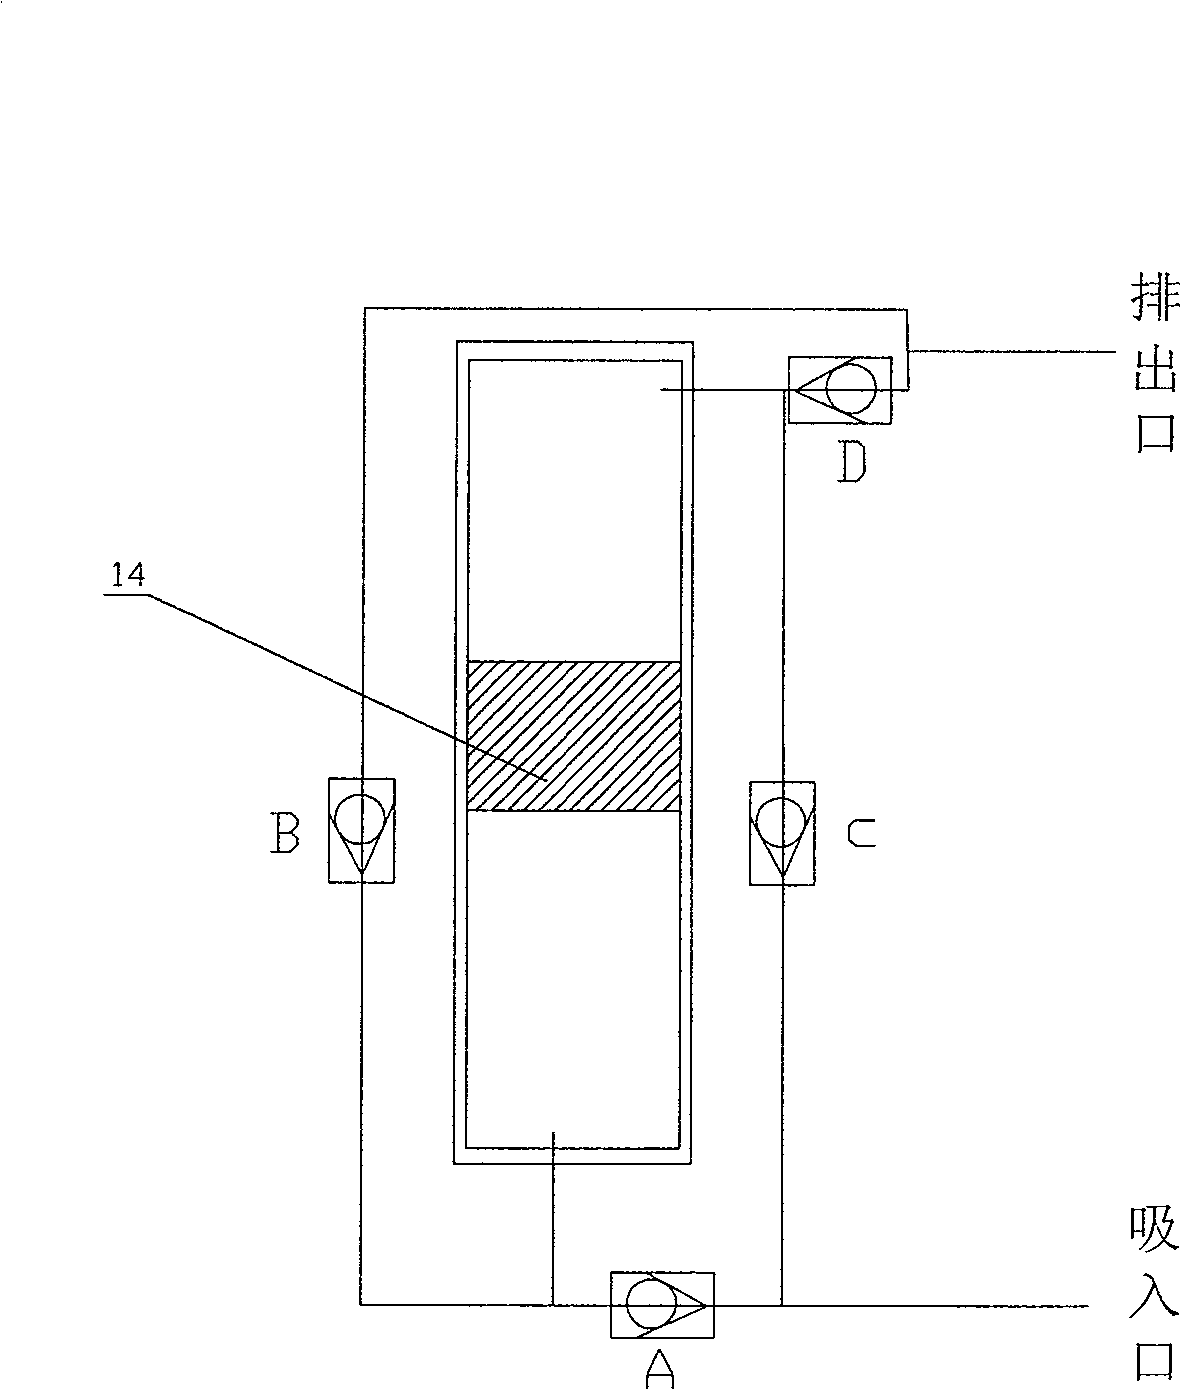 High-pressure mixing fluid pump